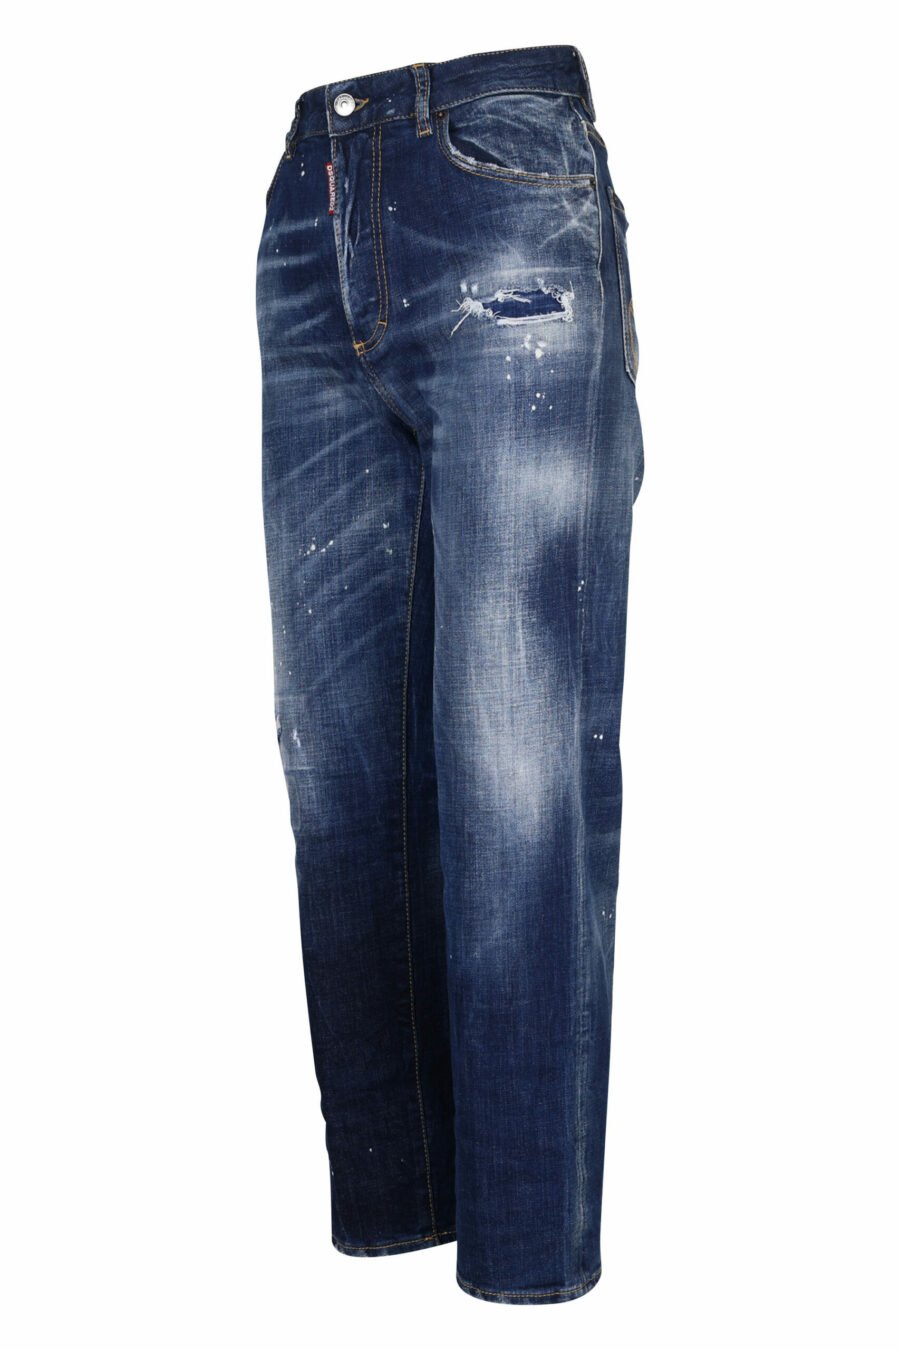 Jean bleu "boston jean" avec déchirures - 8054148122256 1 échelle